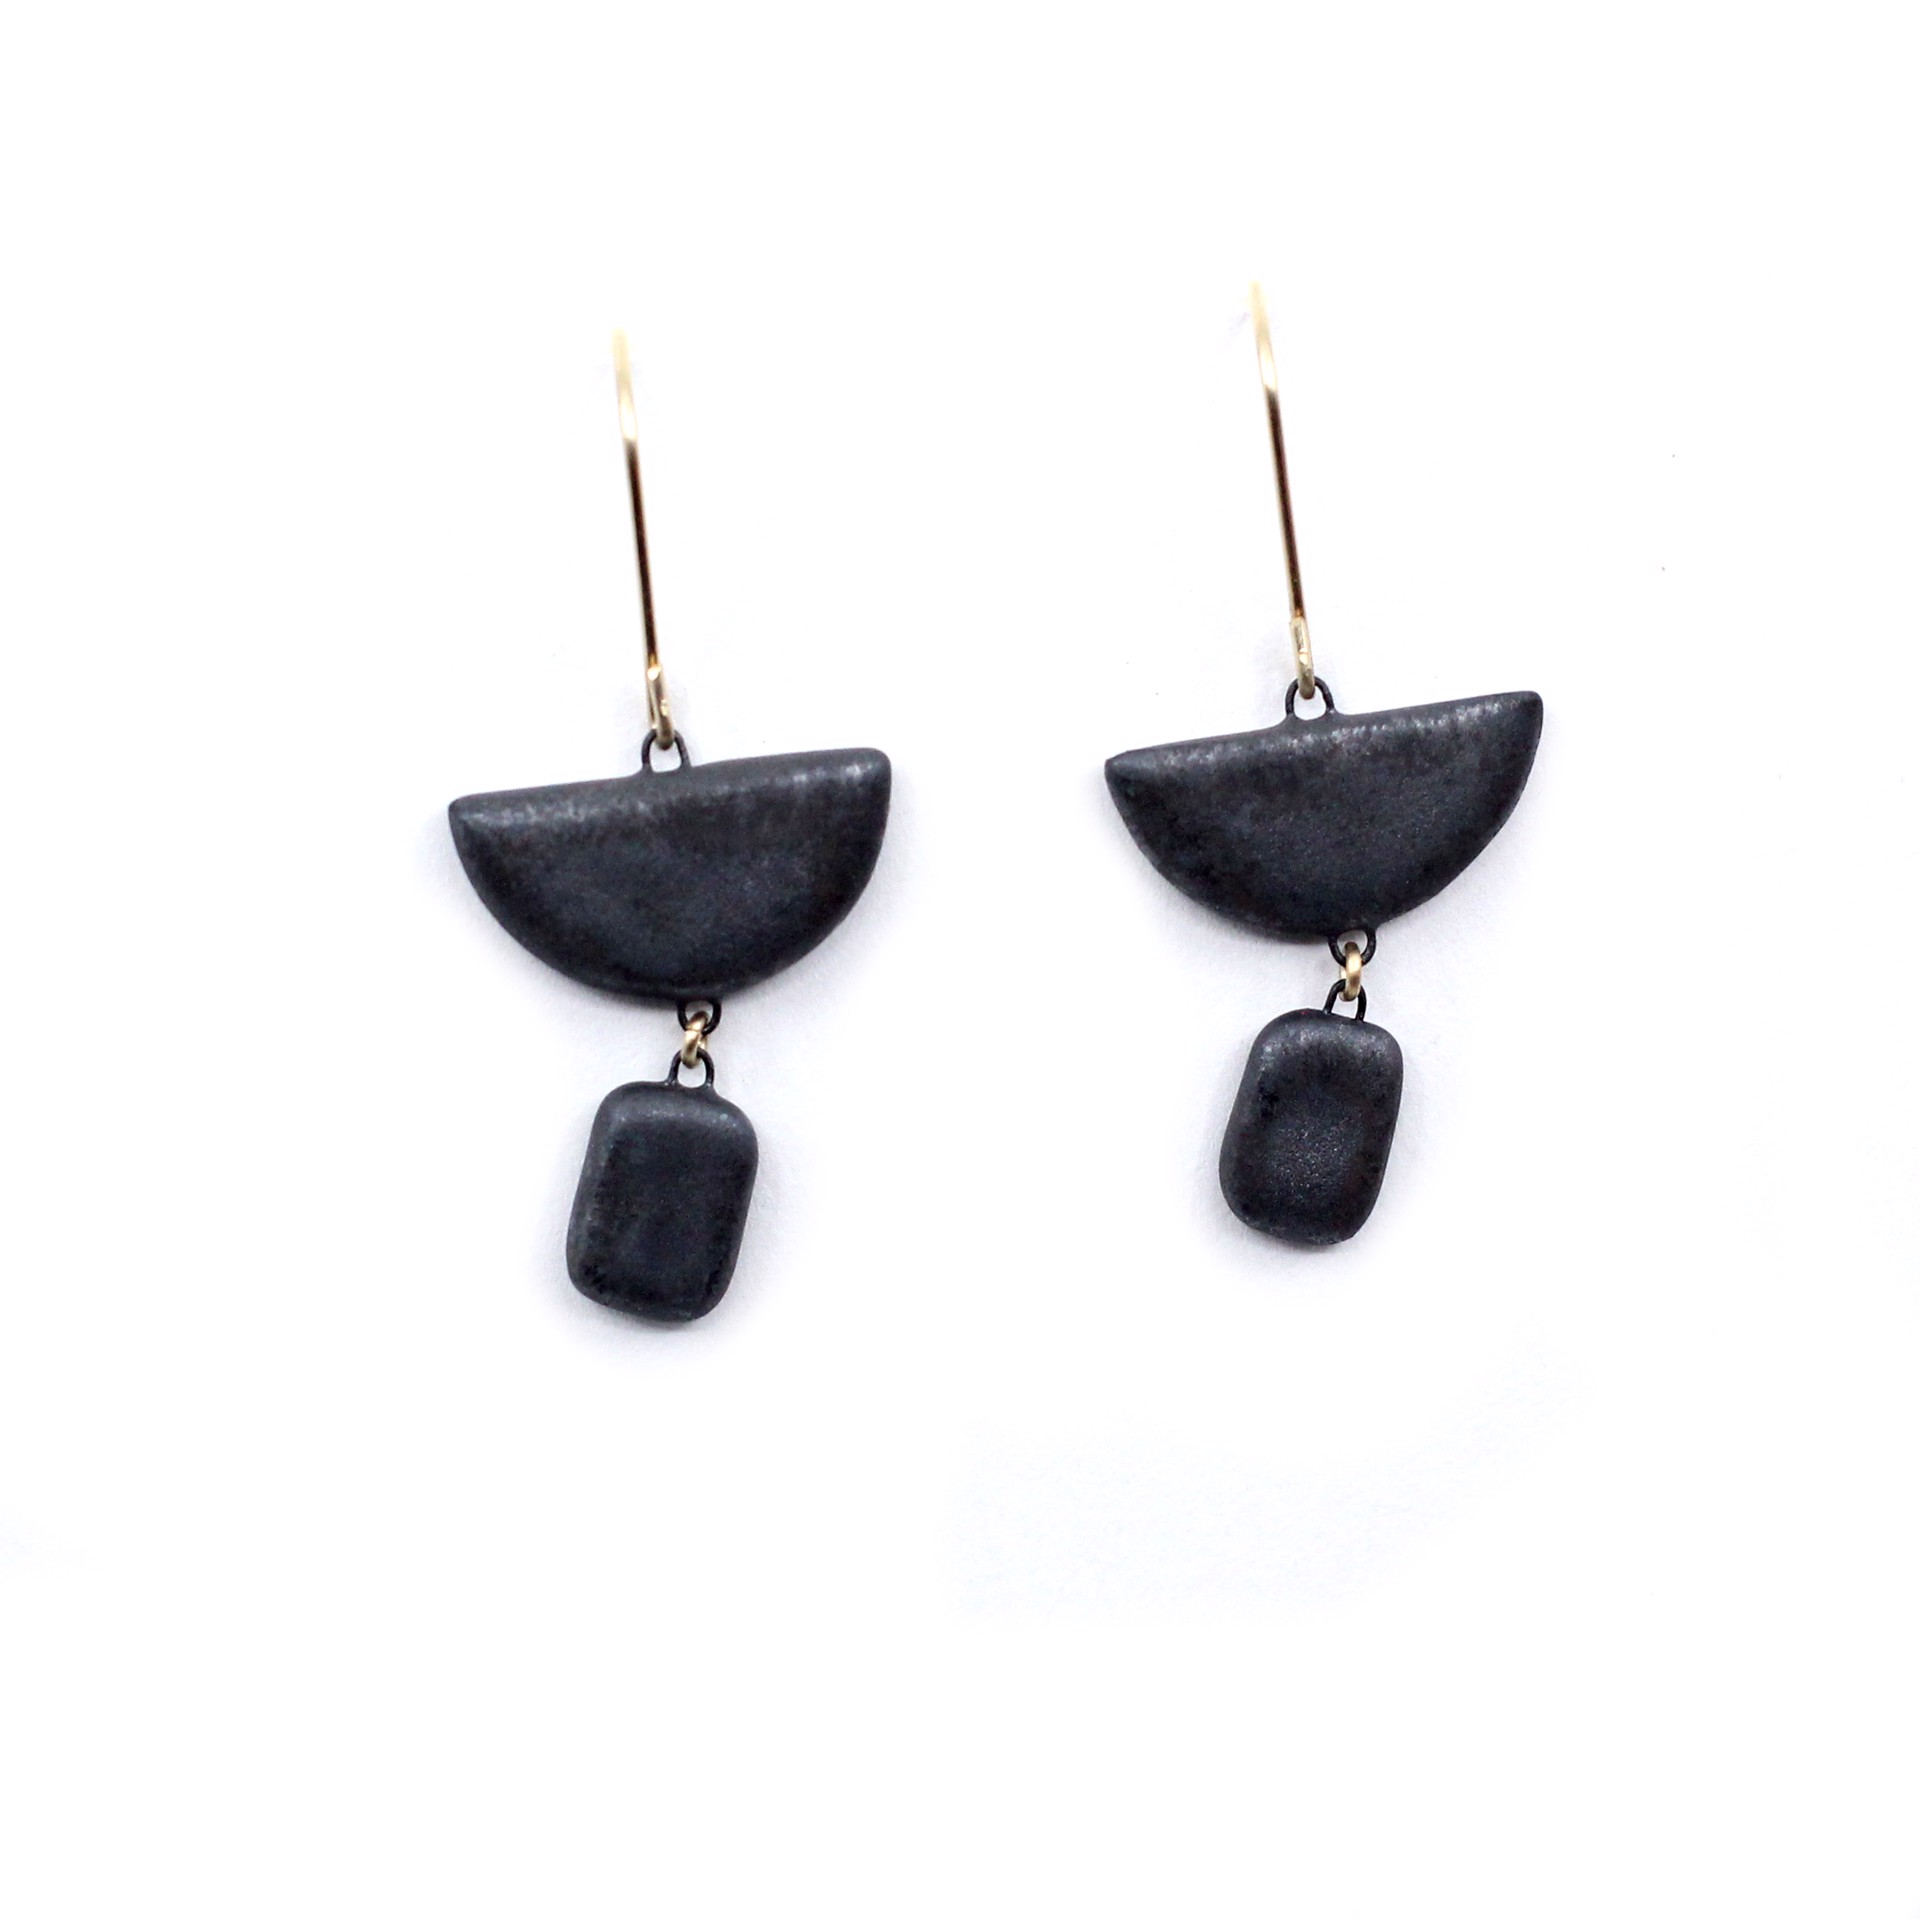 Black Half Moon + Dangle Earrings by Jessica Wertz